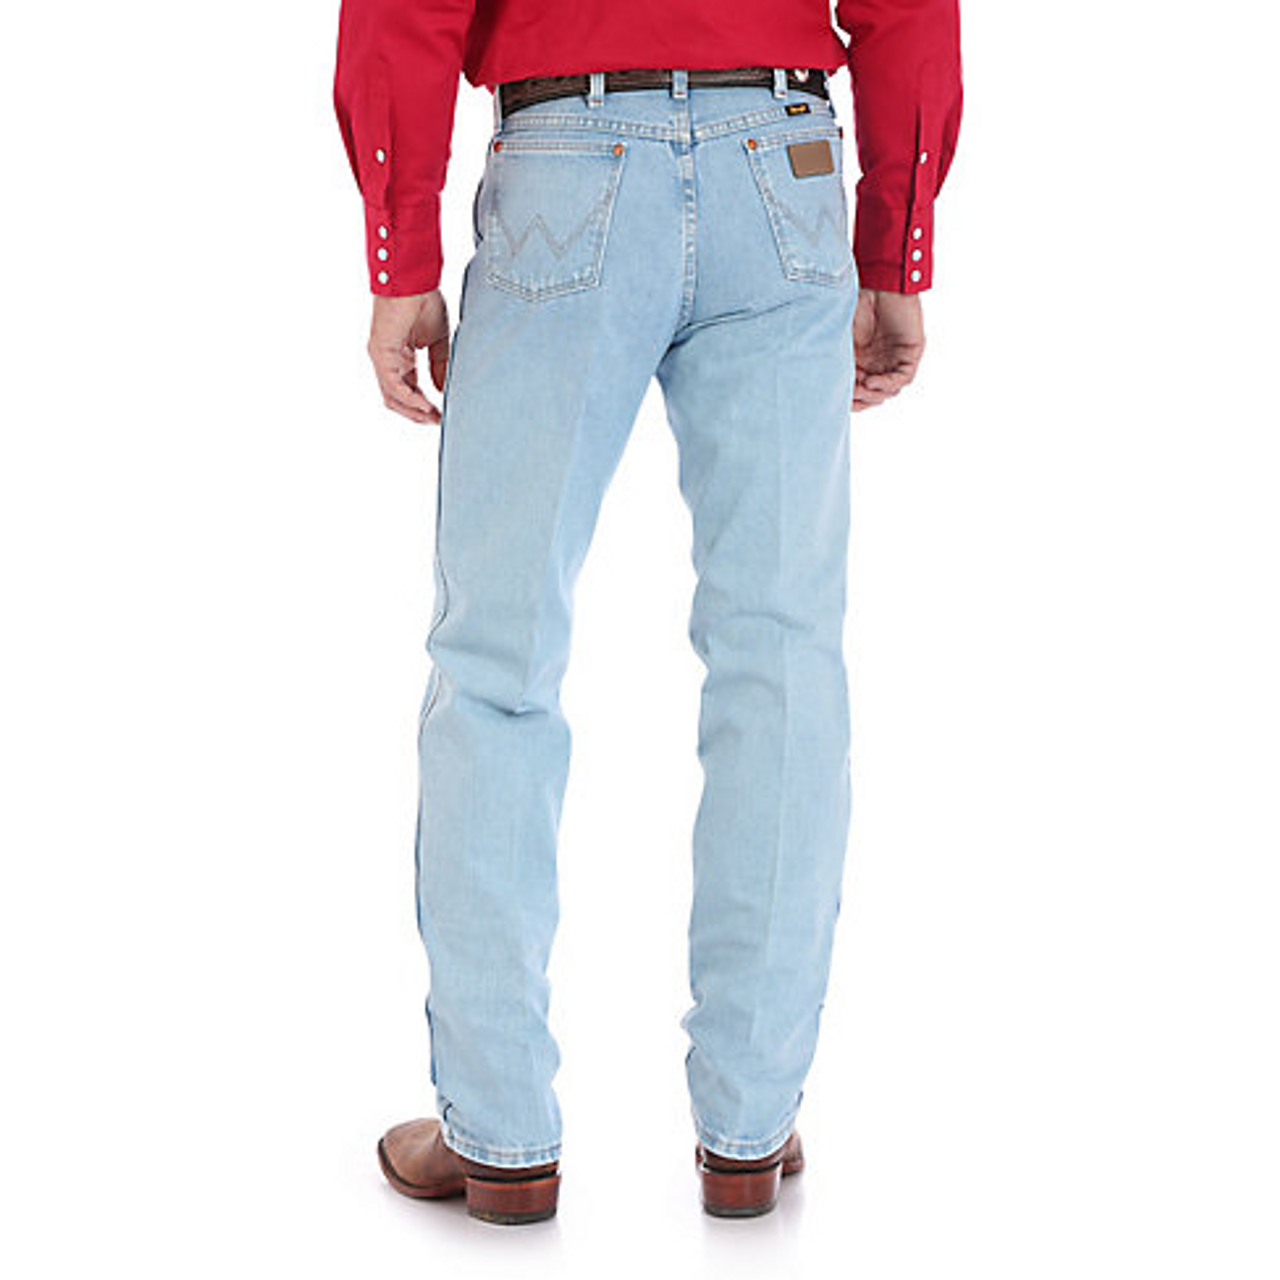 Wrangler Cowboy Cut Men&s Slim Fit Antique Wash Jeans